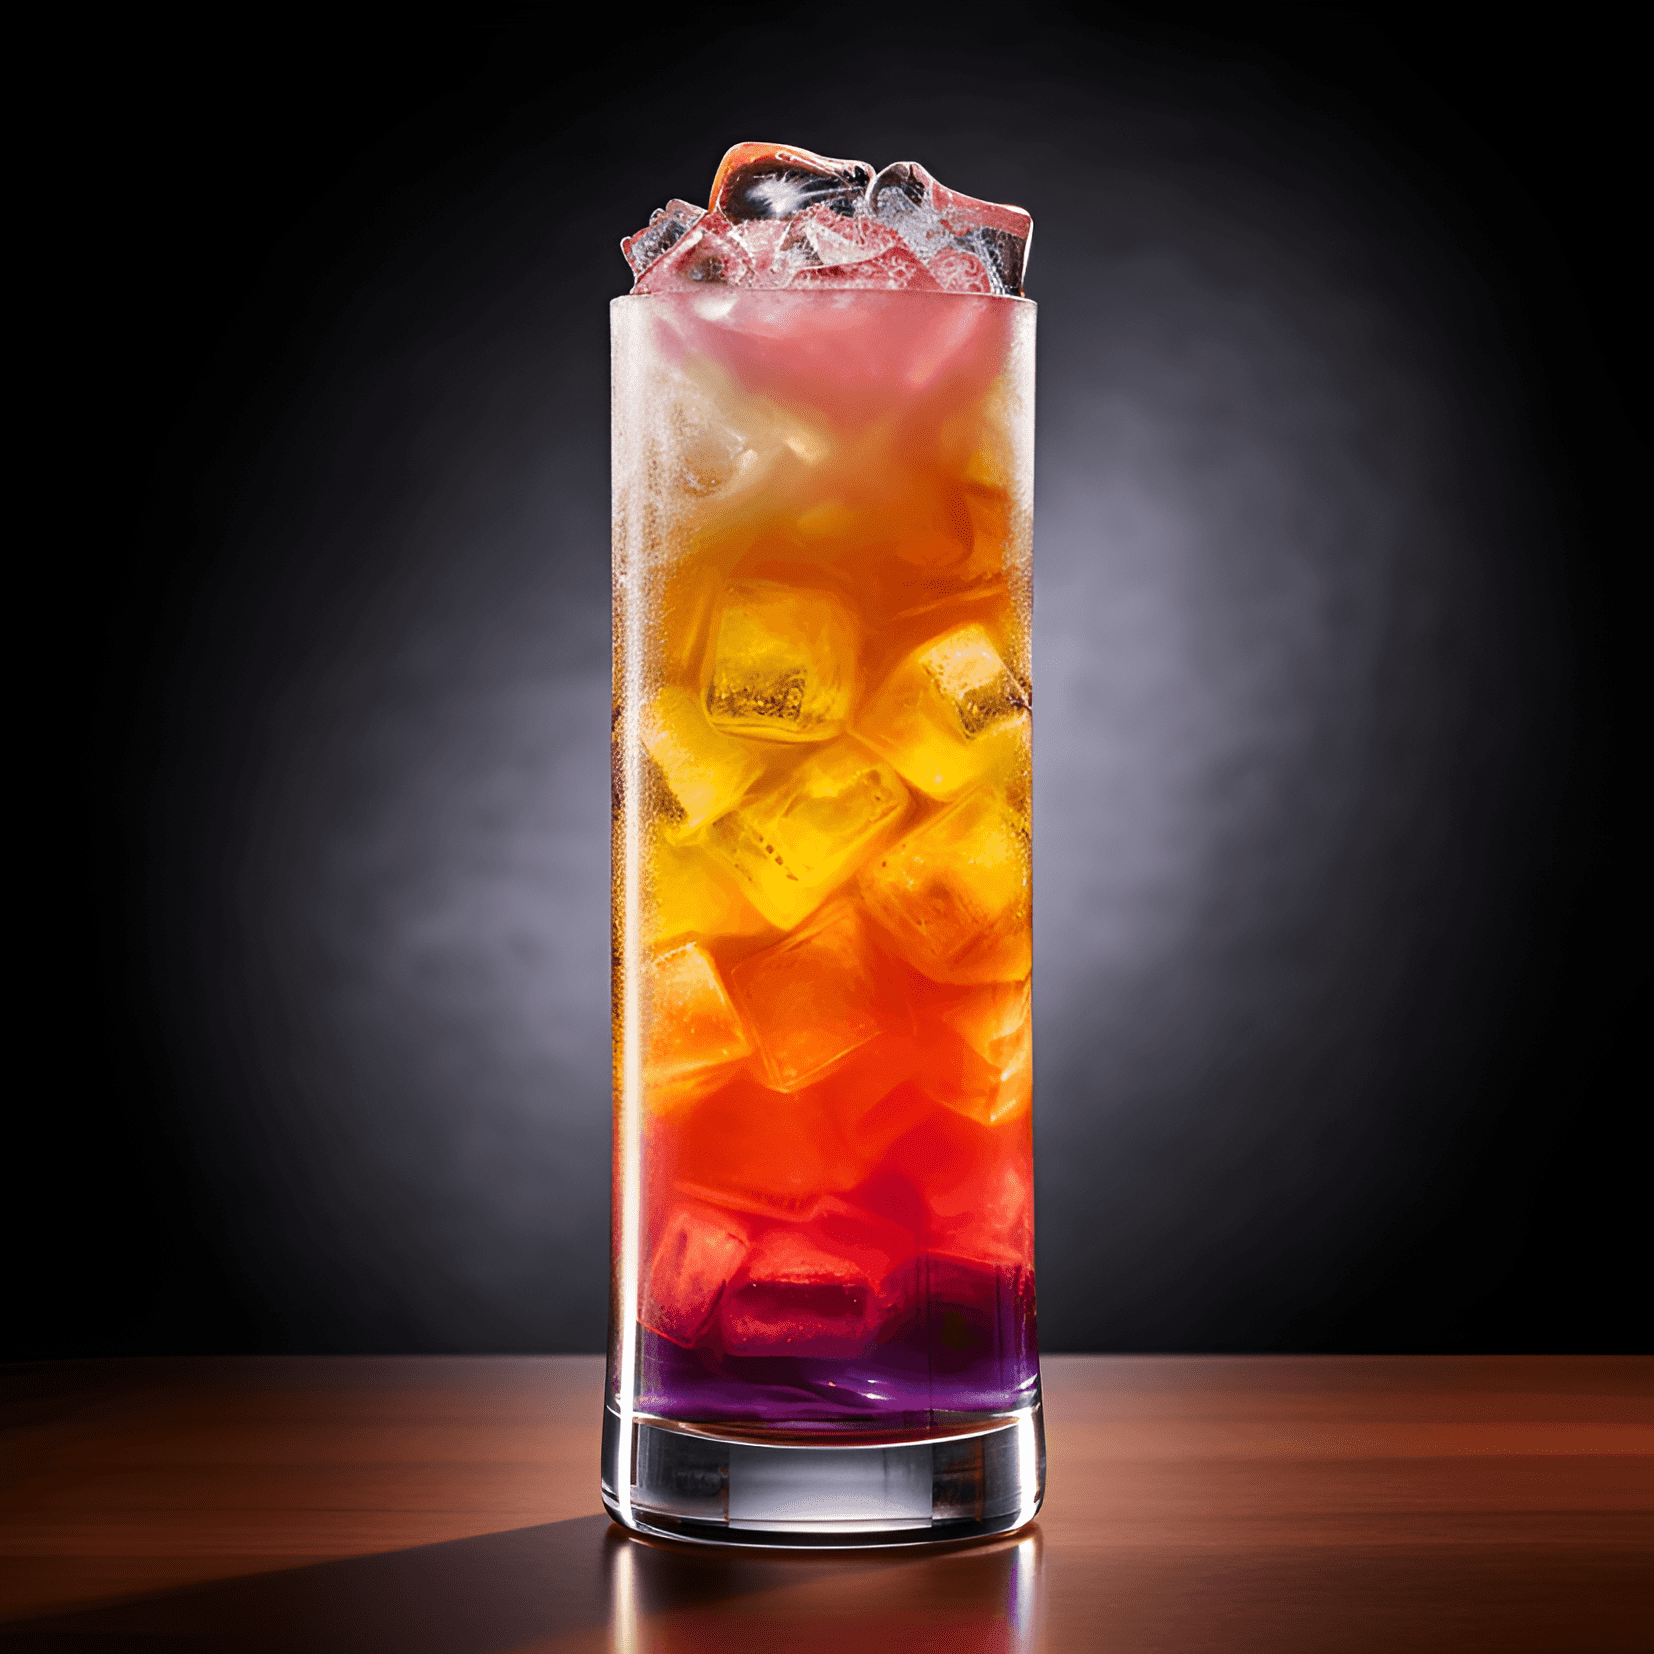 Rum Cooler Cóctel Receta - El Rum Cooler es un cóctel dulce, afrutado y refrescante con un toque de acidez. La combinación de ron, jugos de frutas y soda crea un perfil de sabor bien equilibrado y tropical.